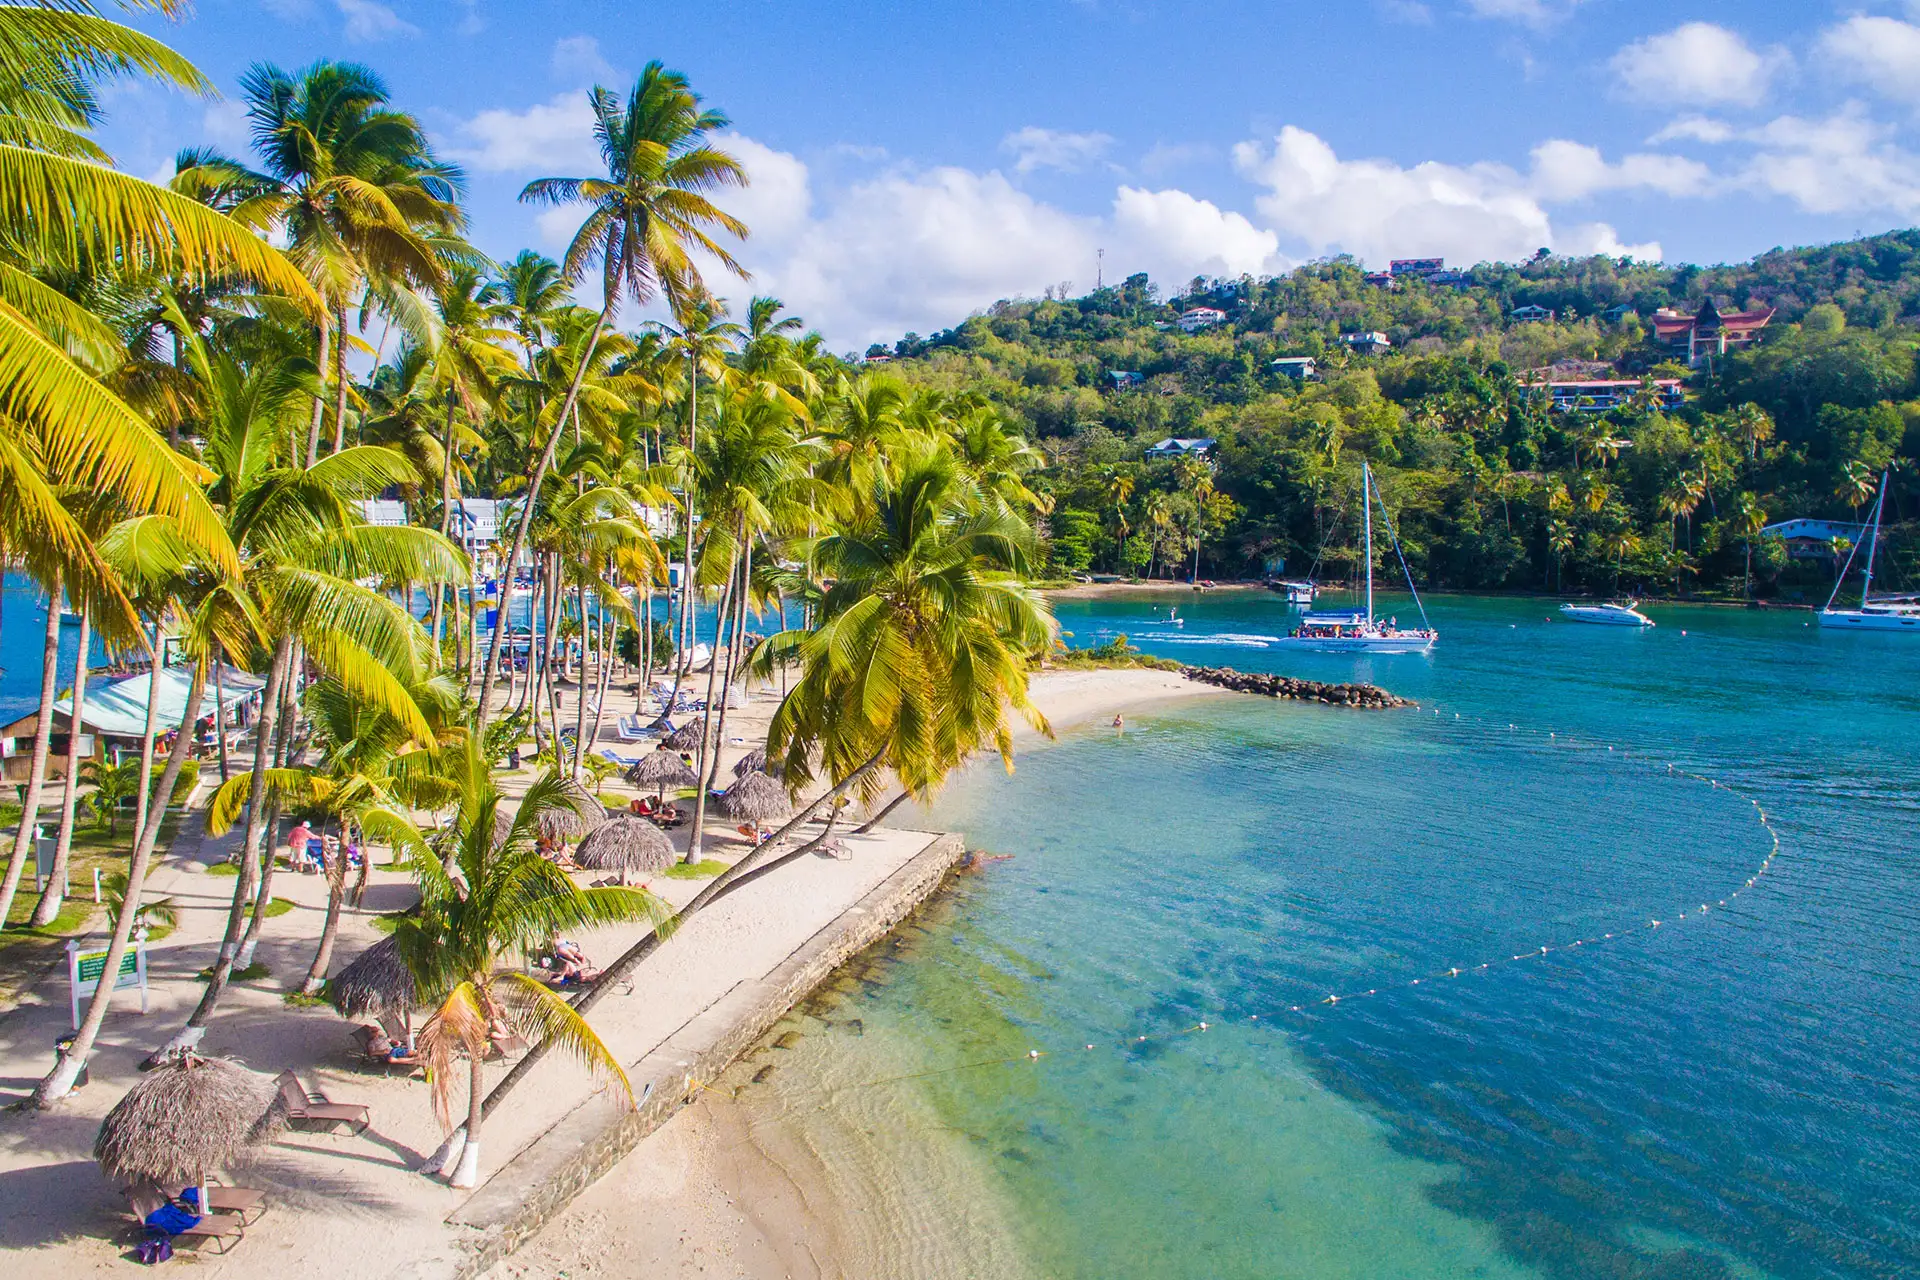 Marigot Bay Resort & Marina in St. Lucia